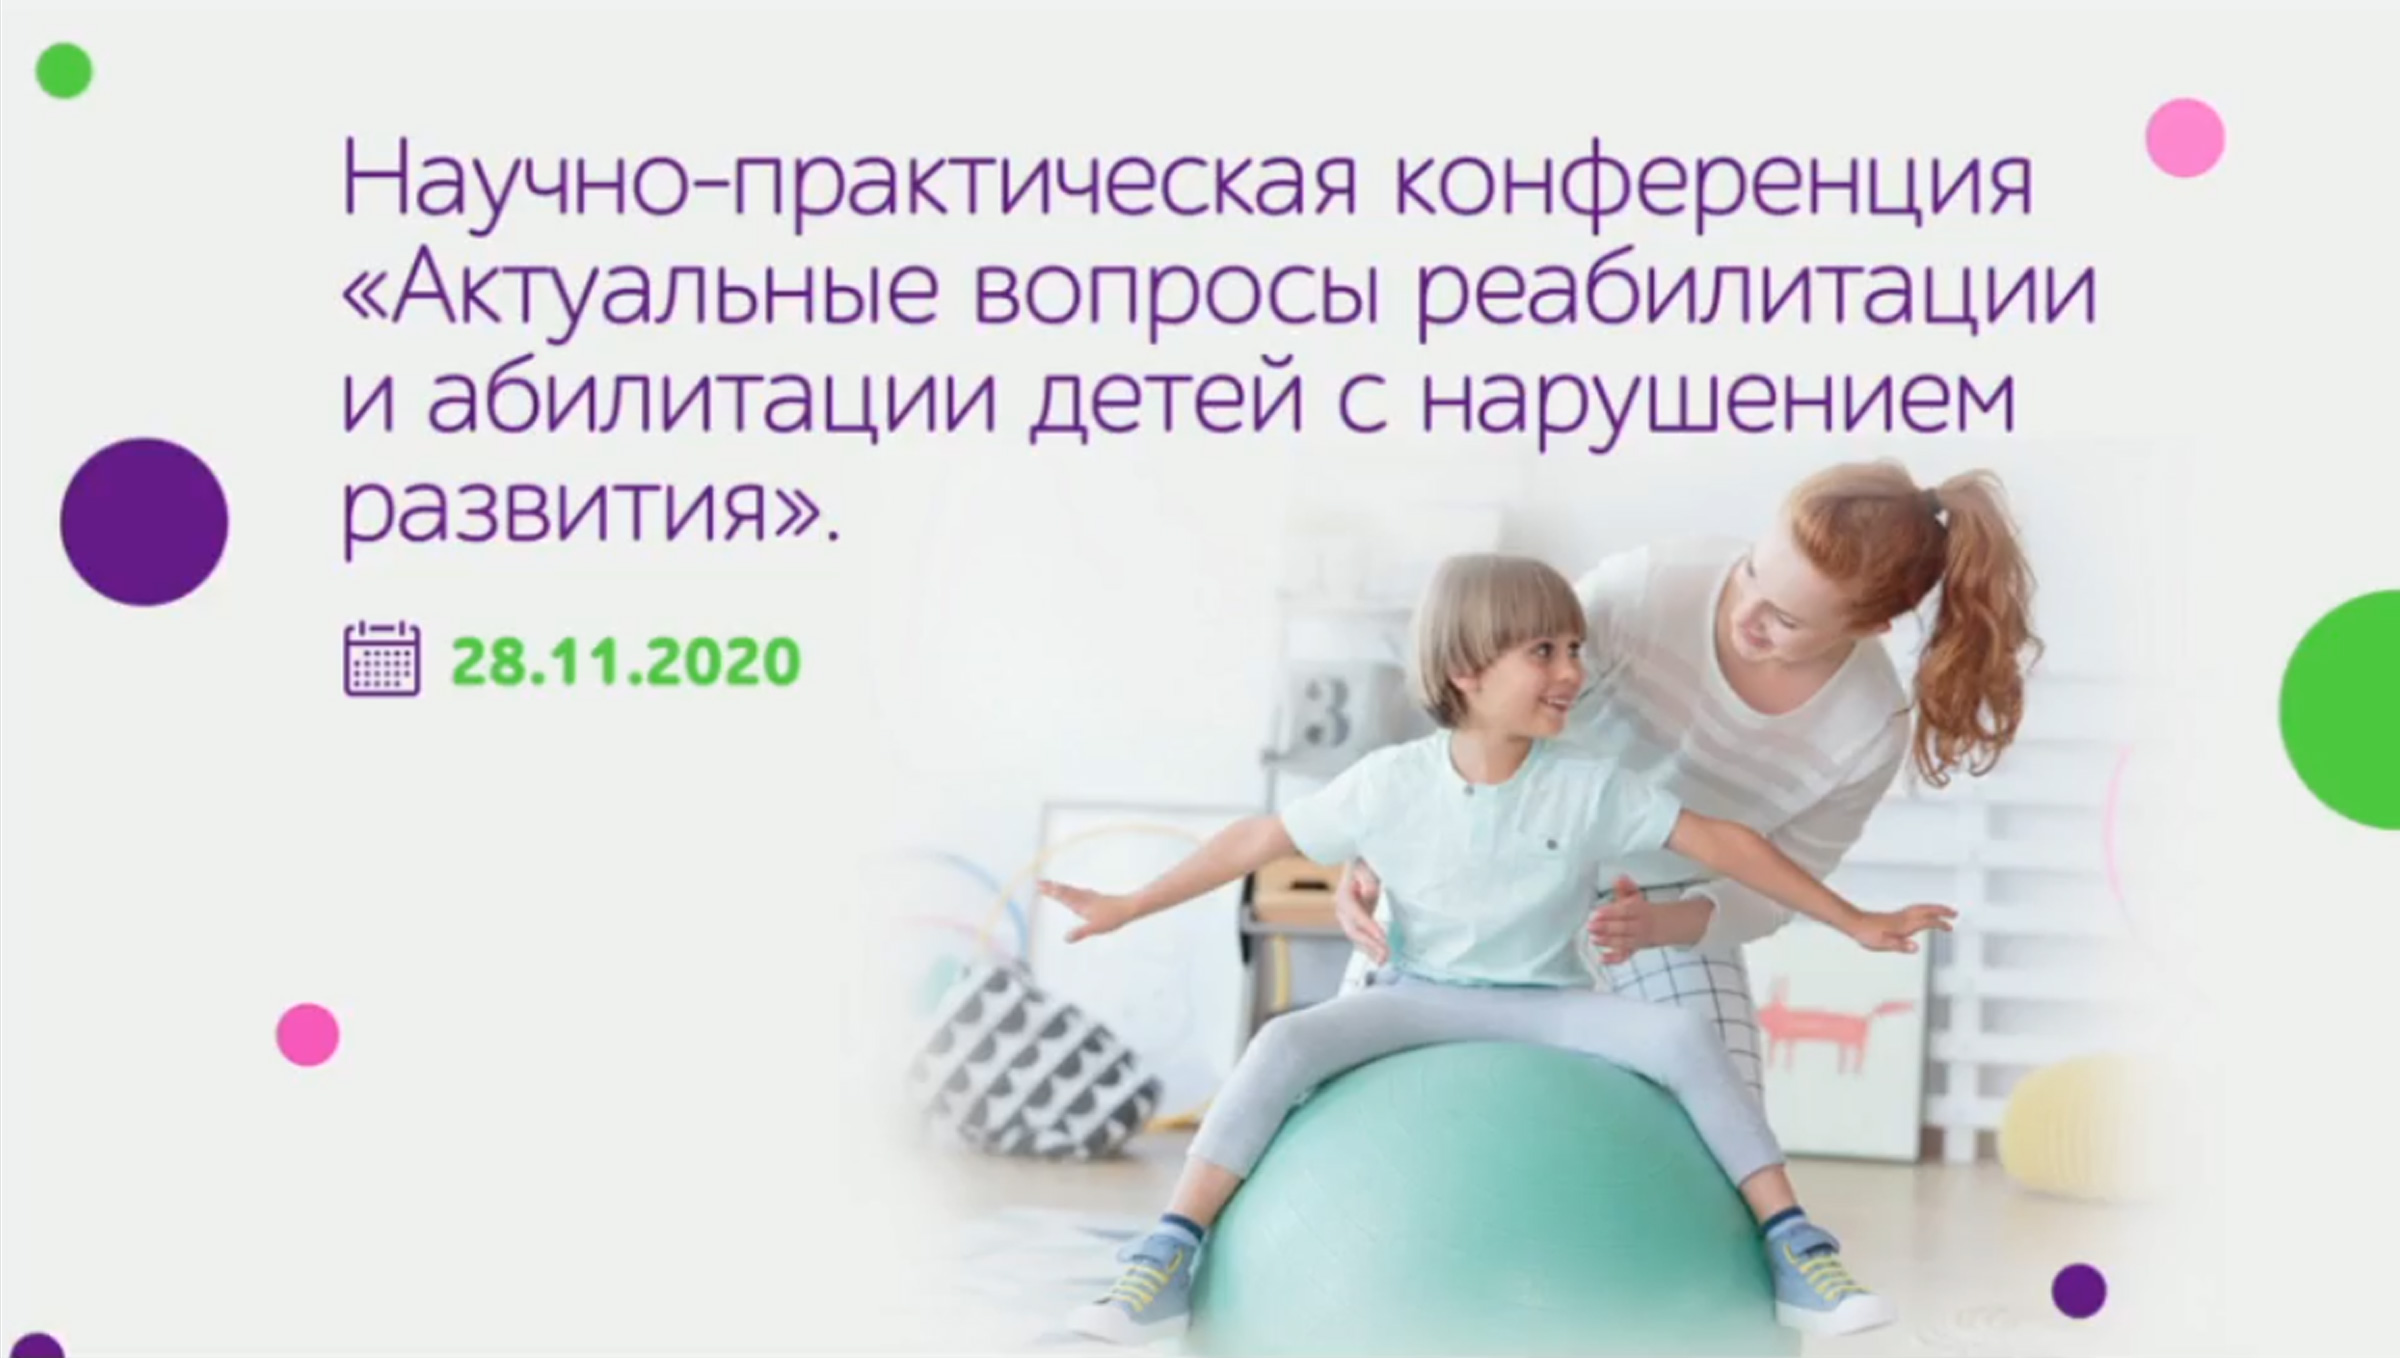 Формирование системы поддержки детей с нарушениями развития Орловской области